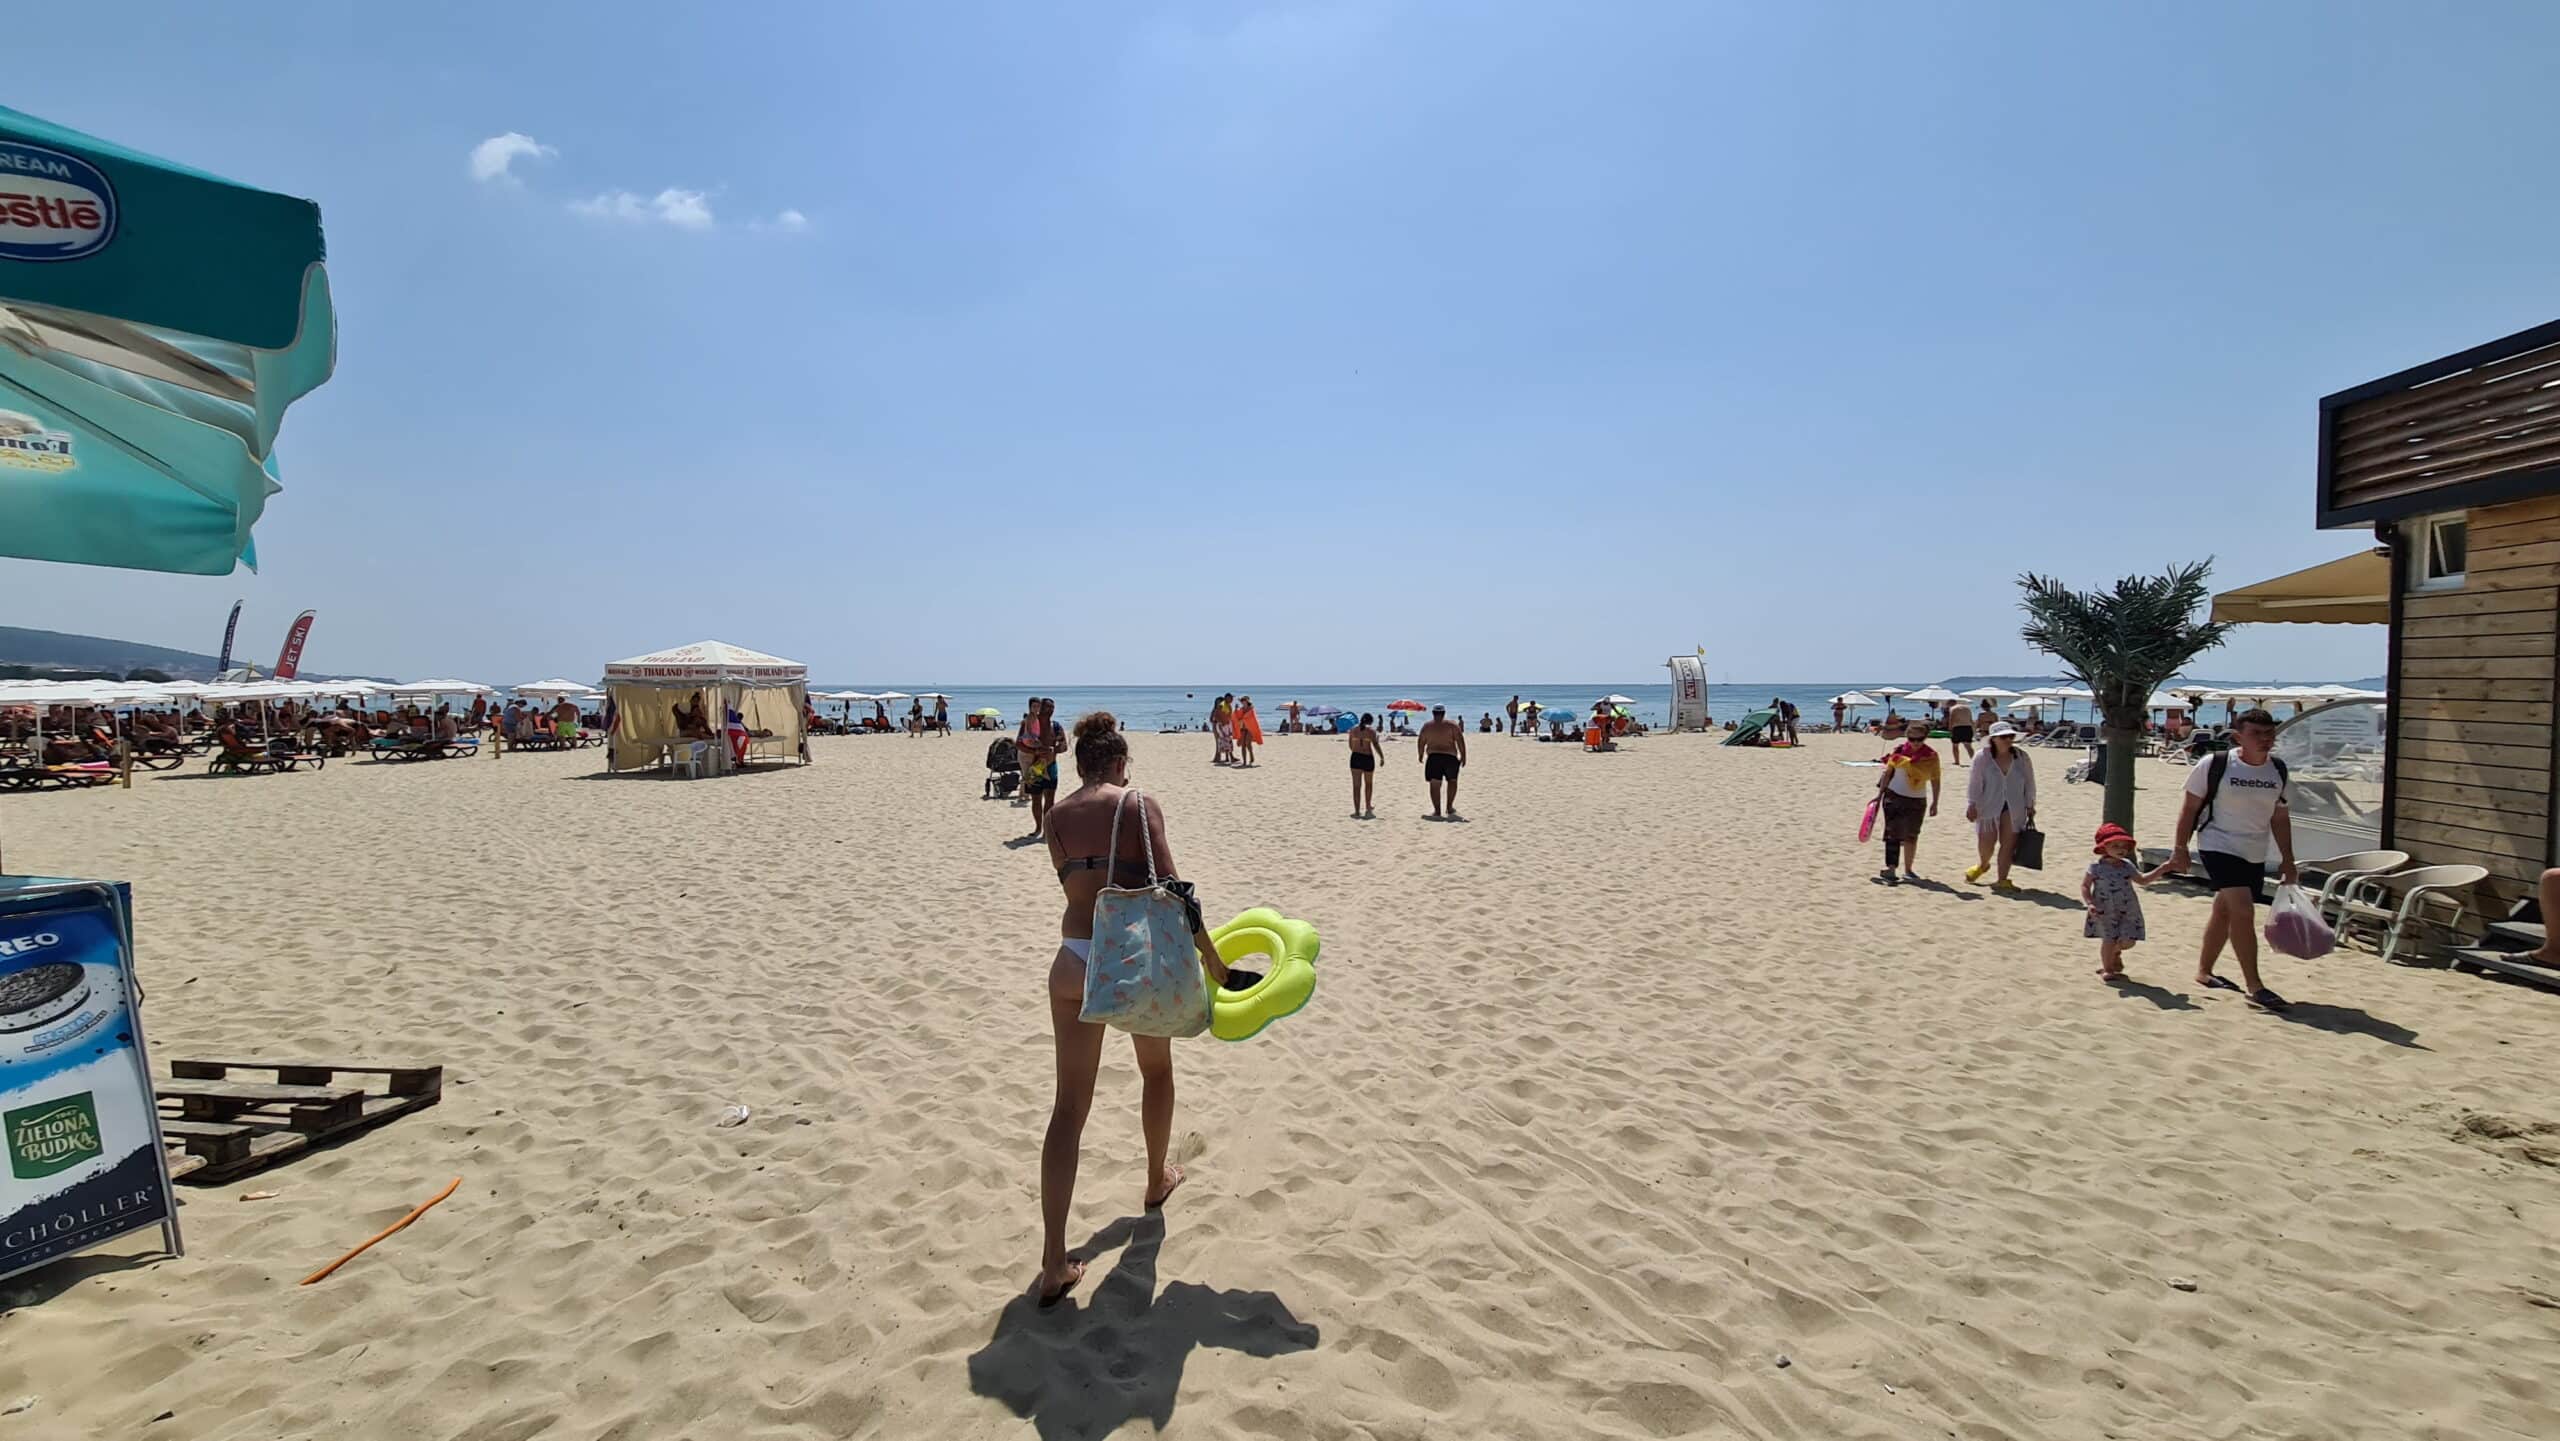 Vacanță cu copii. Activități de făcut în Sunny Beach și impresii despre DIT Majestic Beach Resort | Demamici.ro